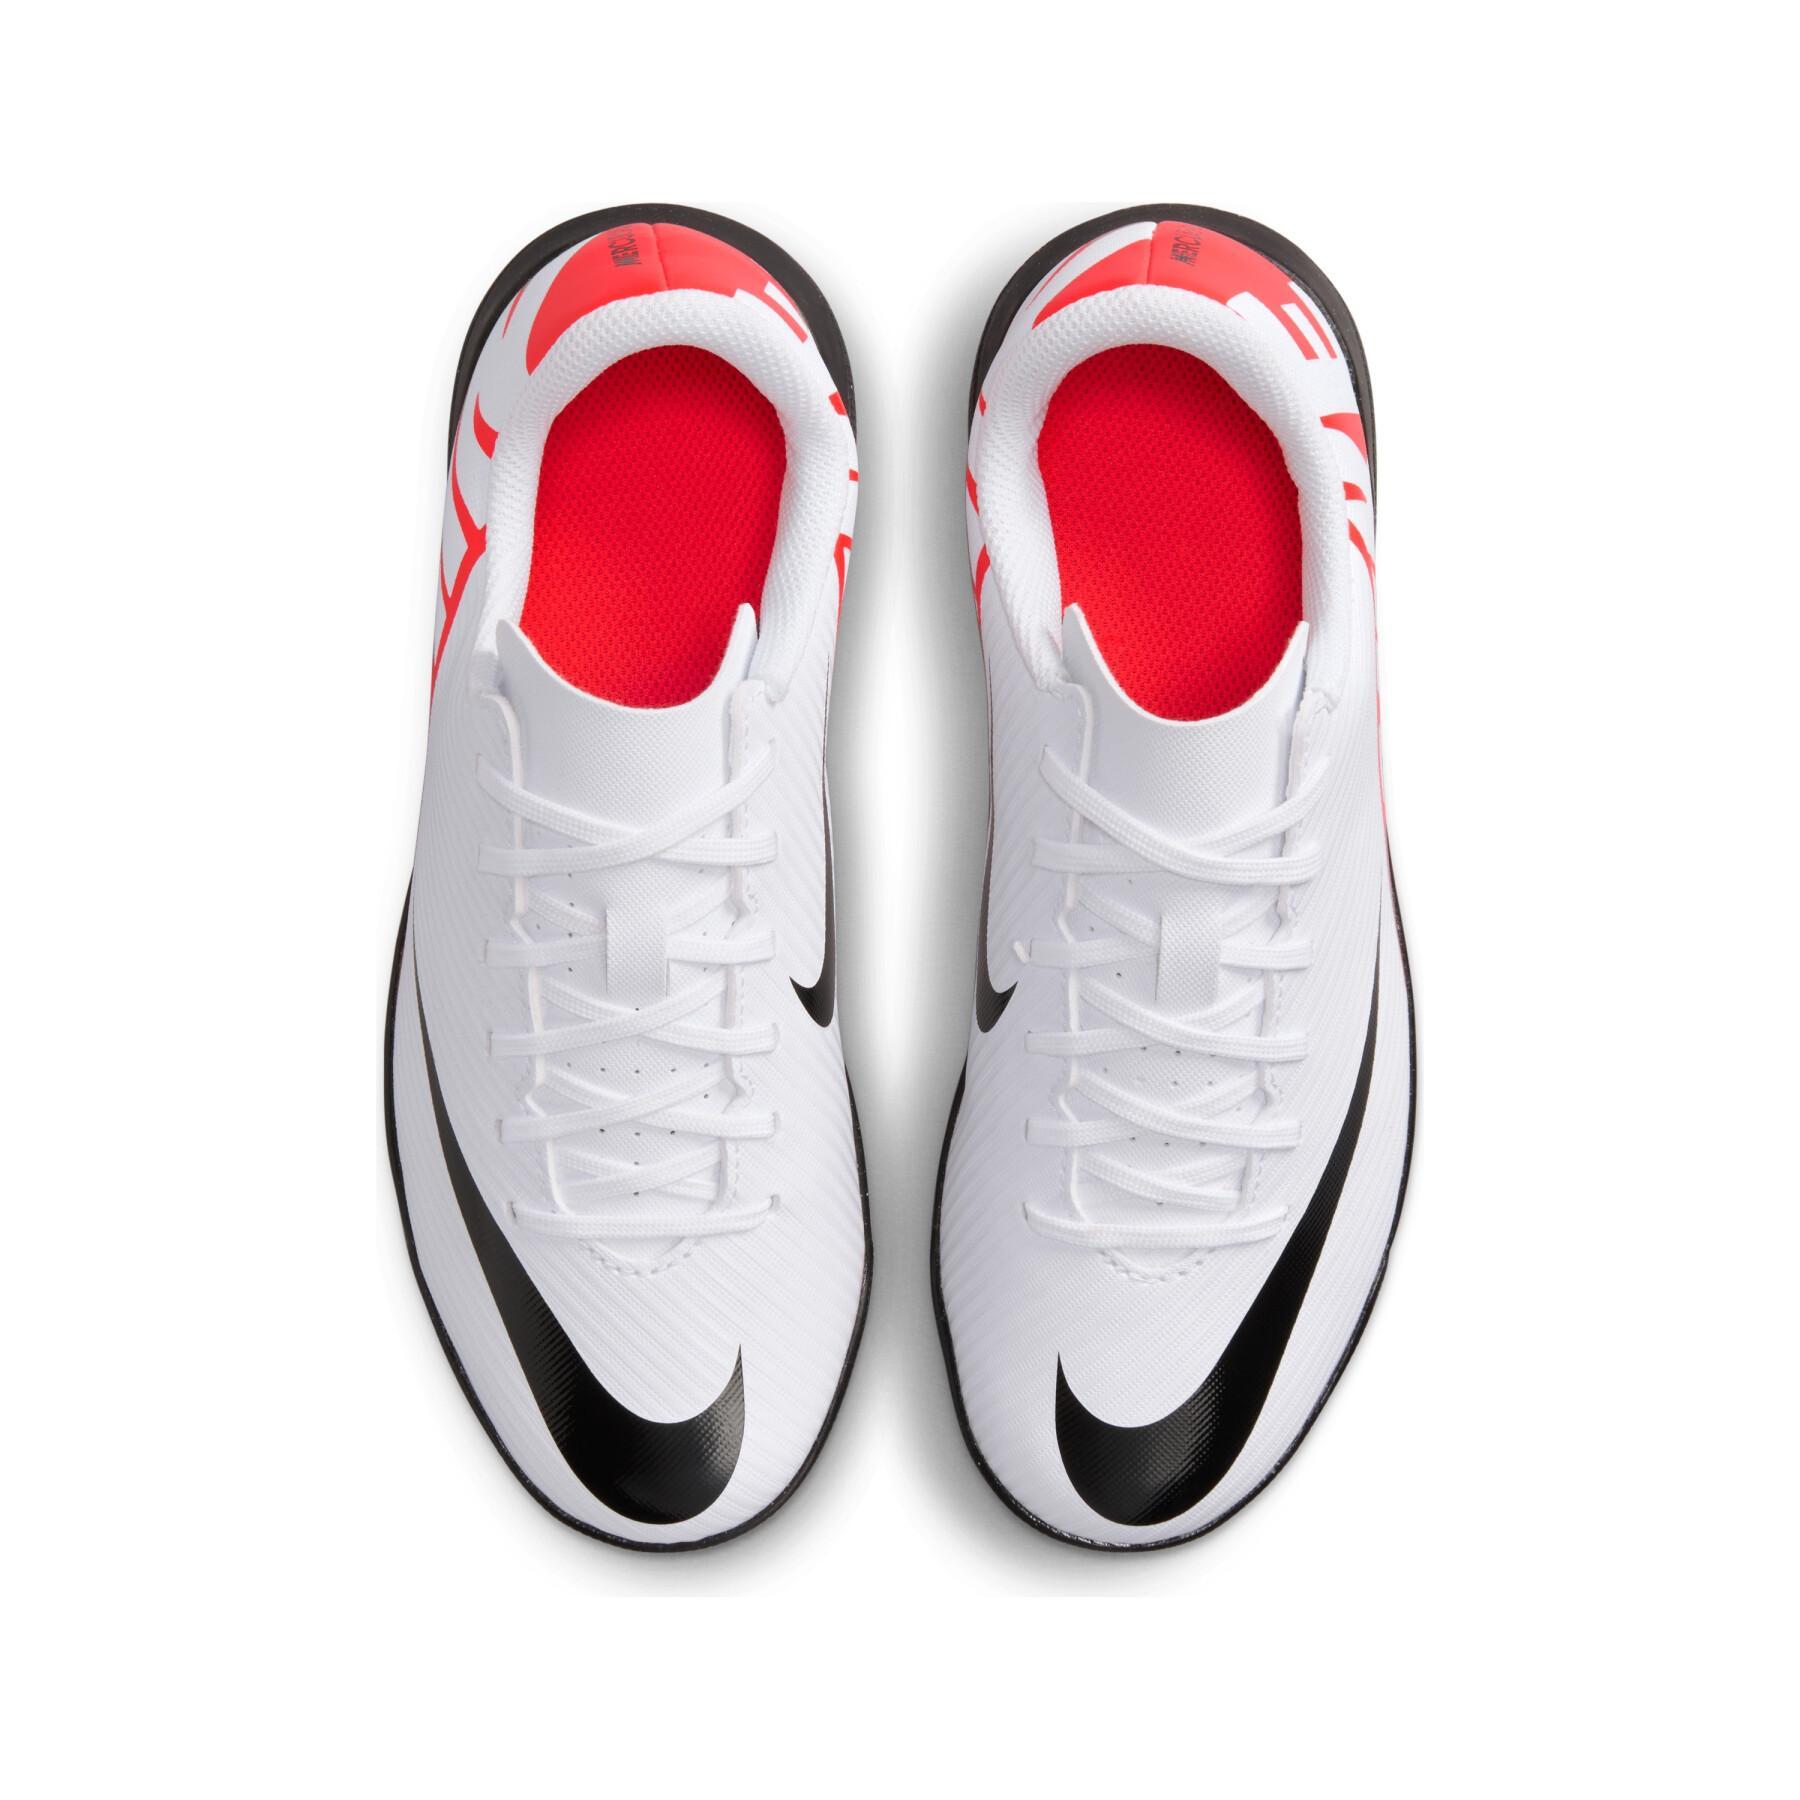 Botas de fútbol para niños Nike Mercurial Vapor 15 Club Turf